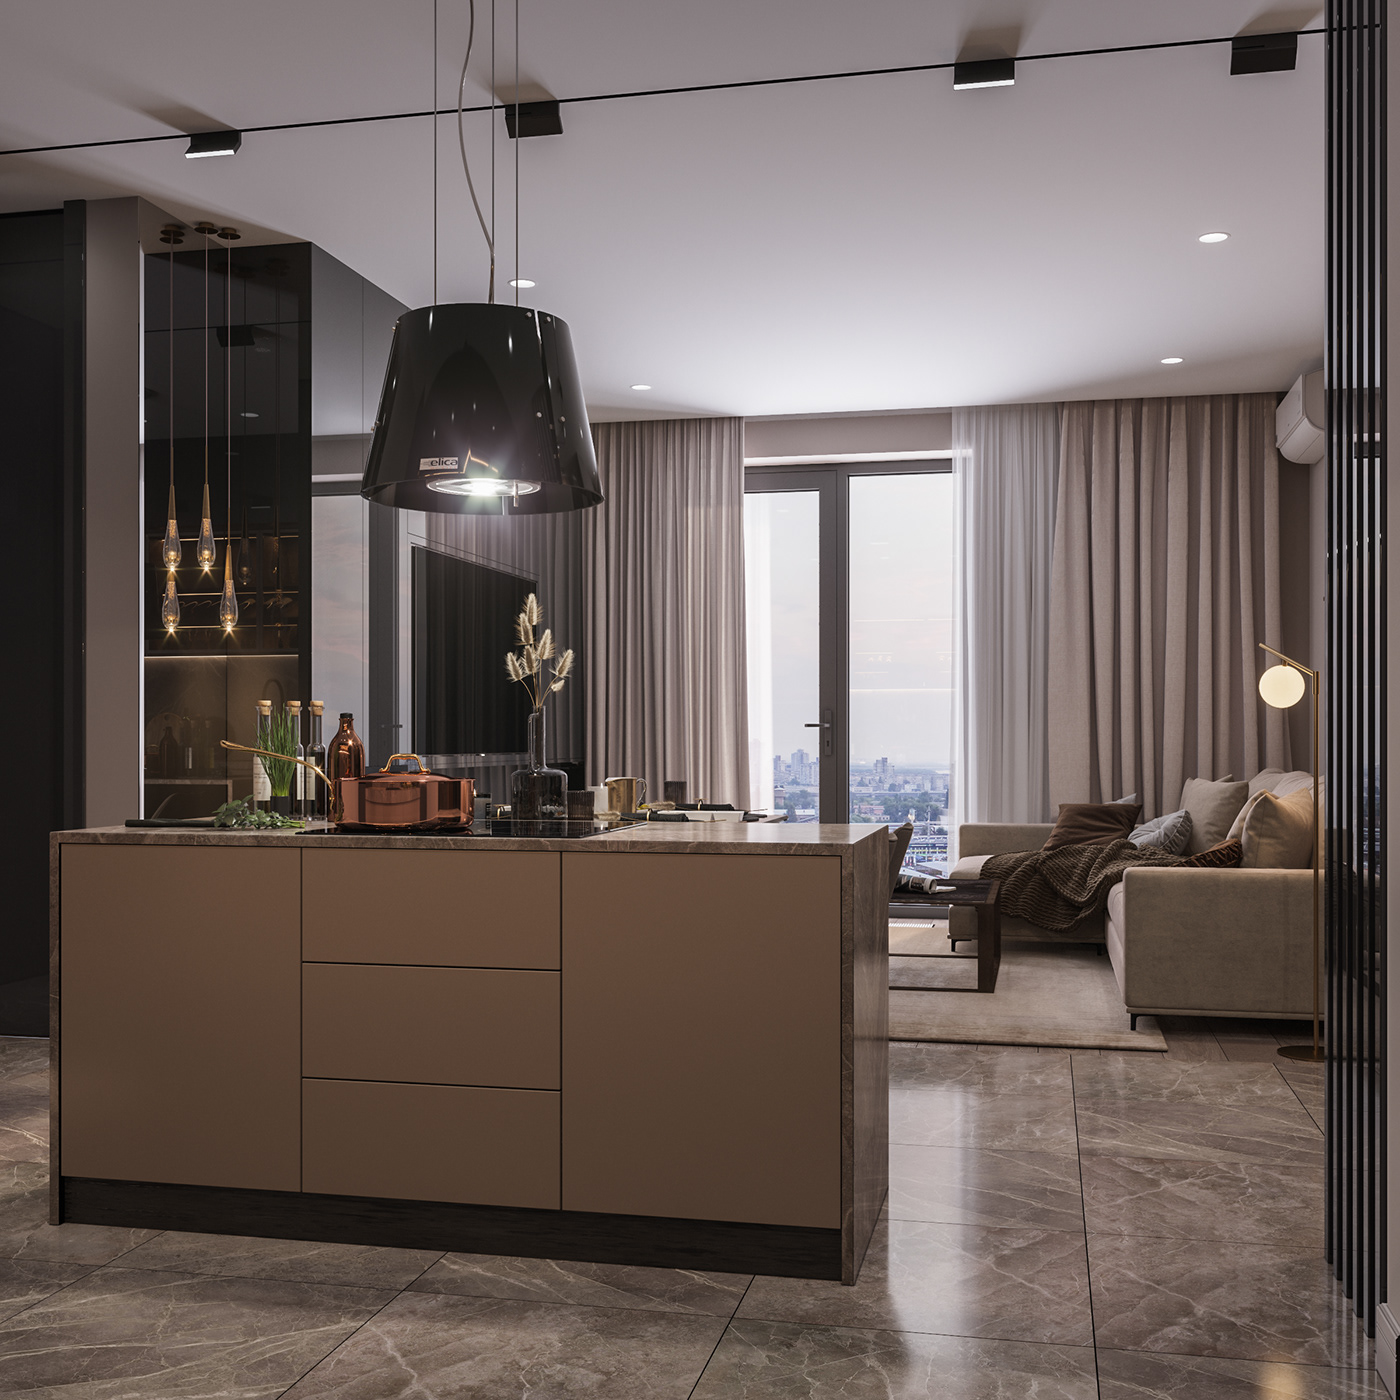 Minimalism studio kitchen livingroom design dark Interior beige